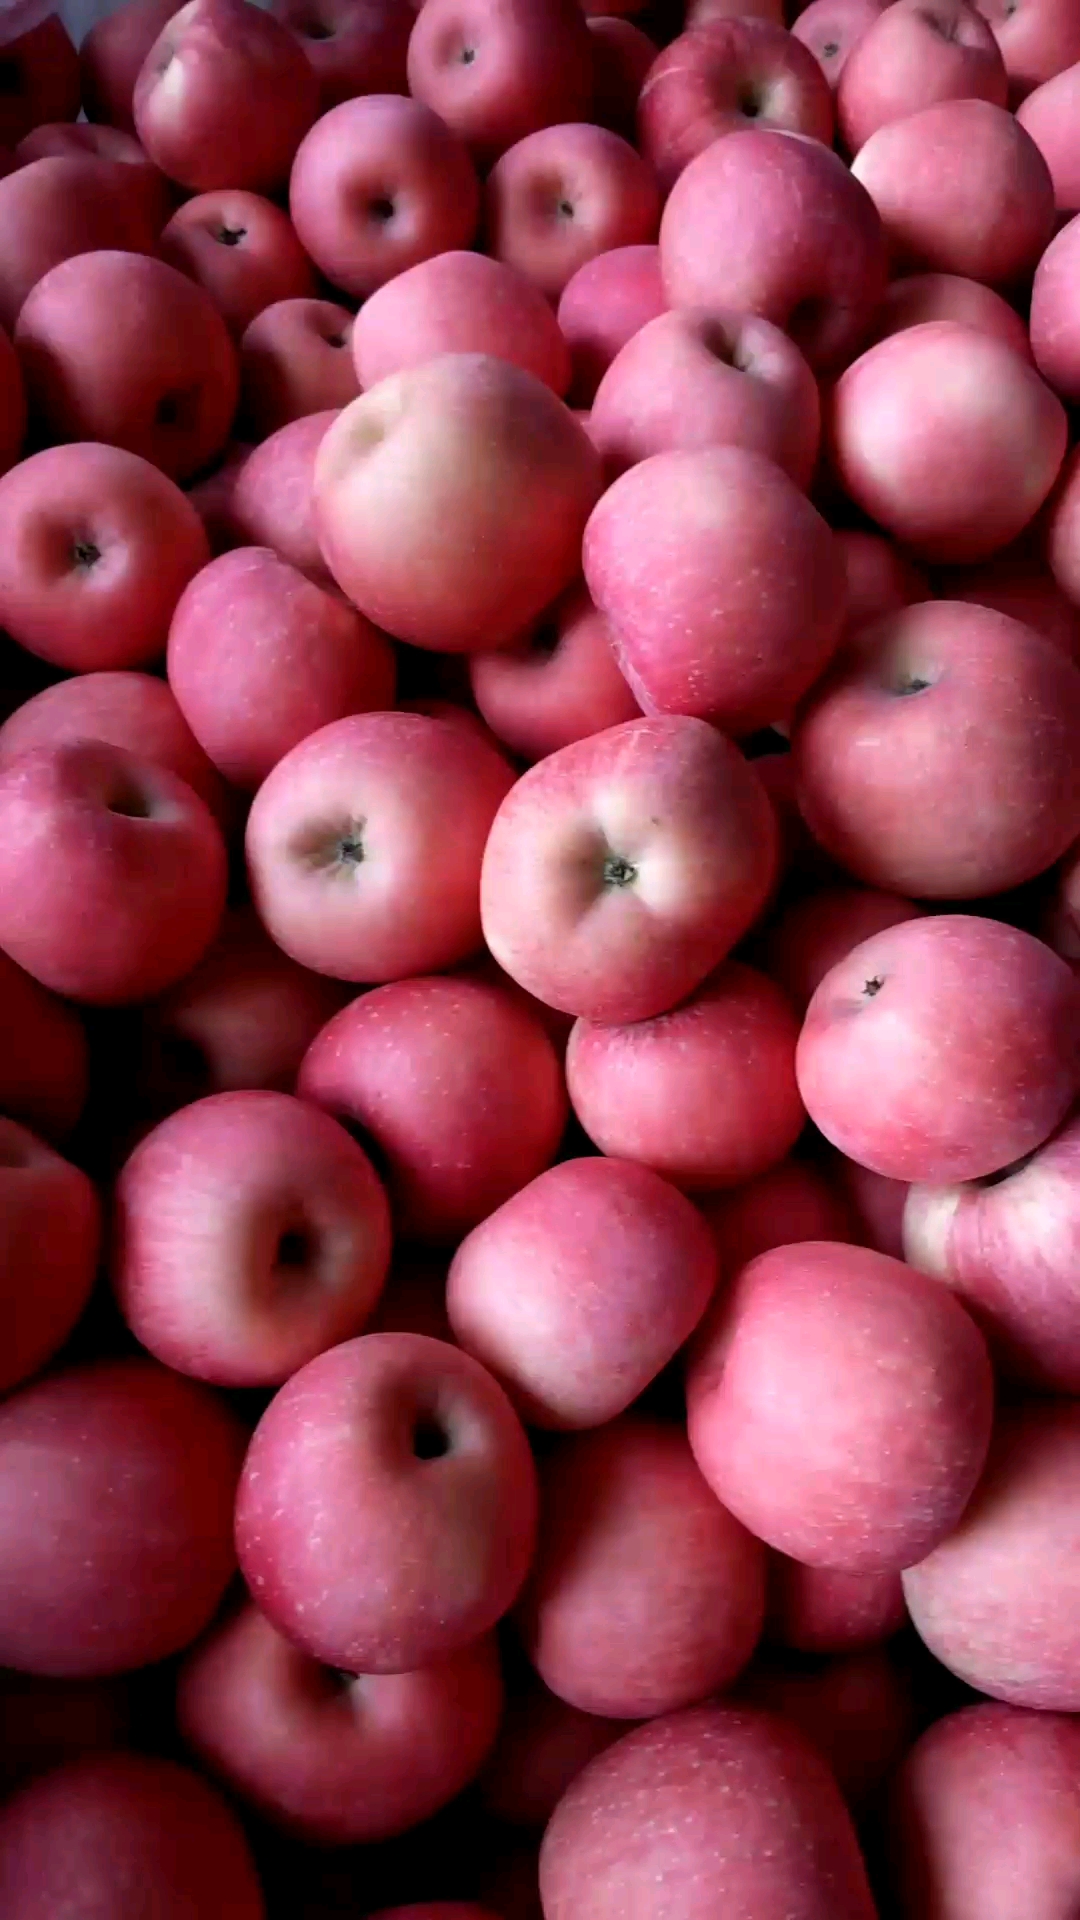 烟台苹果是不是很诱人啊,冷库存放,保留了刚采摘的脆甜,喜欢吃苹果的